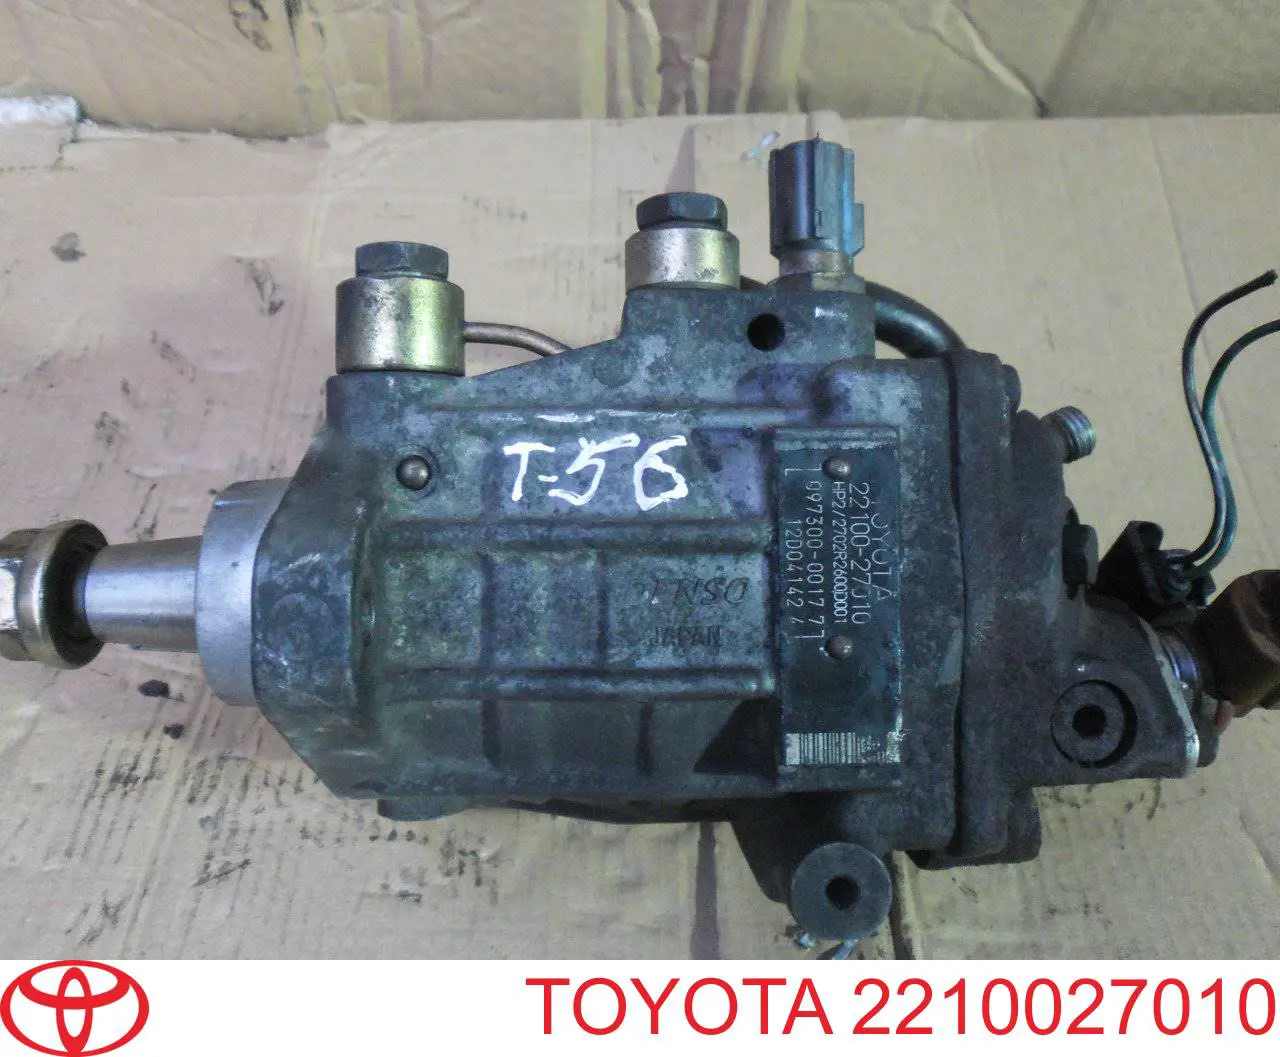 Топливный насос высокого давления Тойота Превия ACR3 (Toyota Previa)